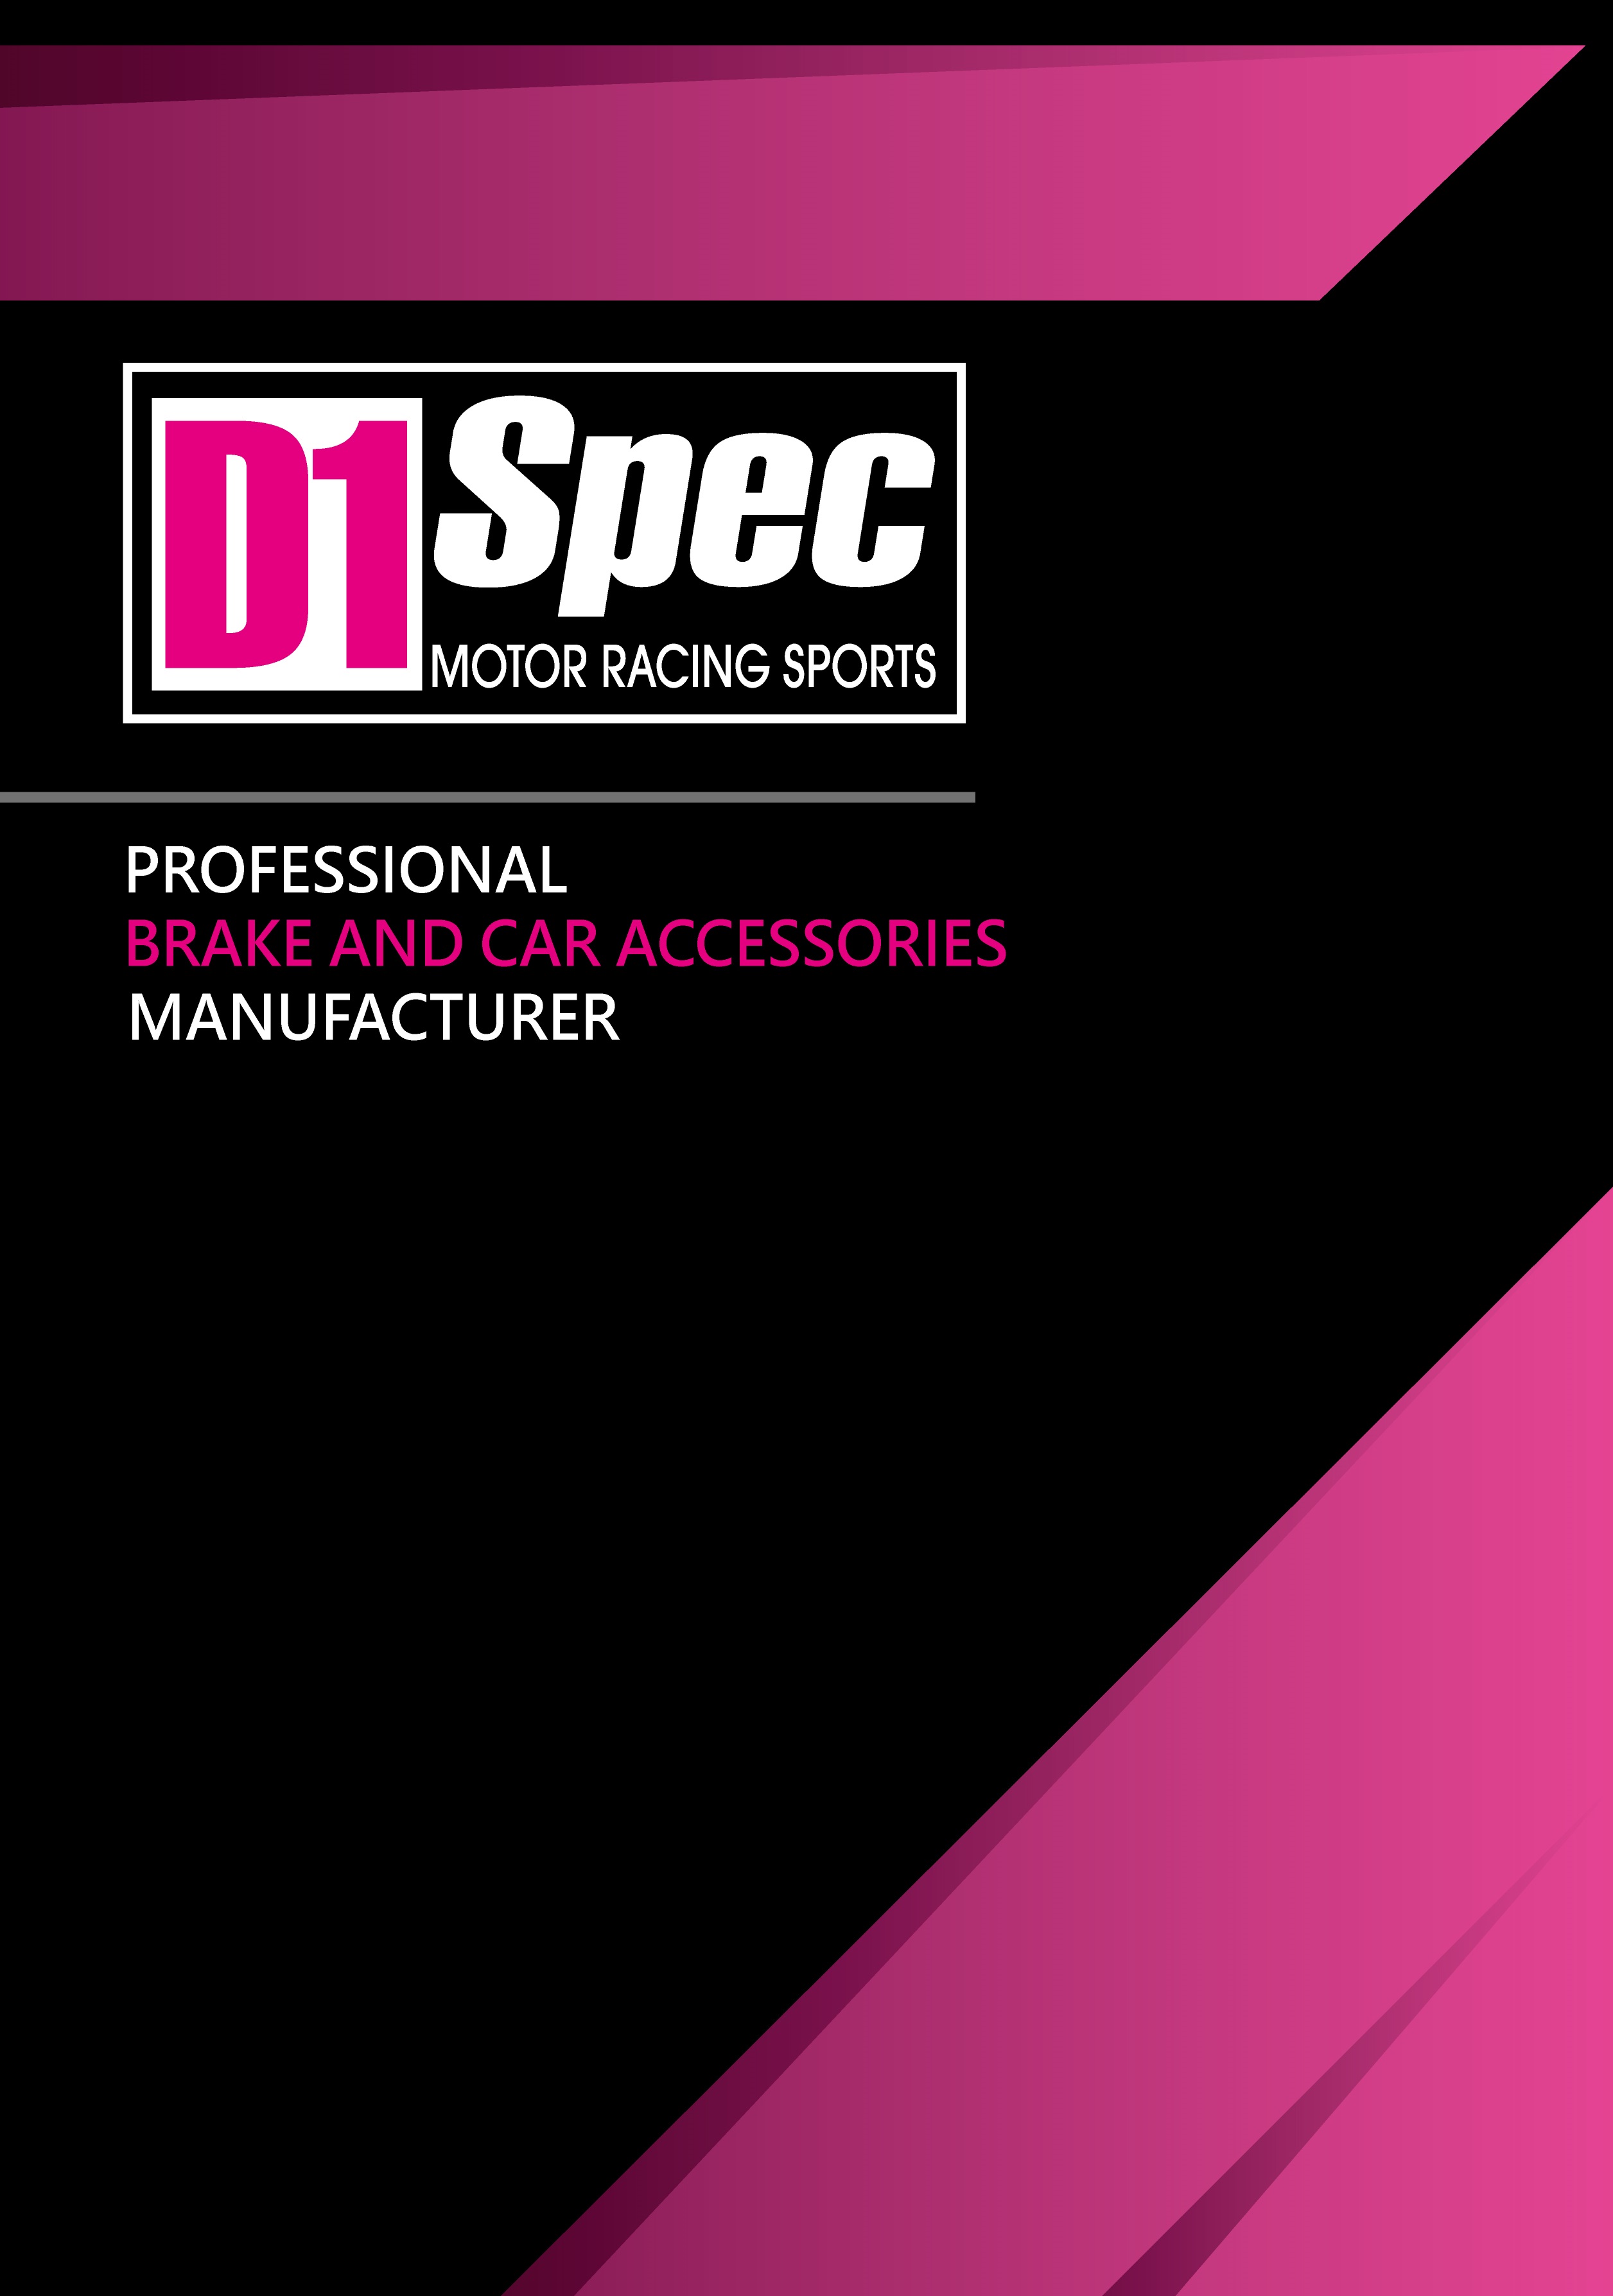 D1spec Automotive Parts & Accessories Catalogue